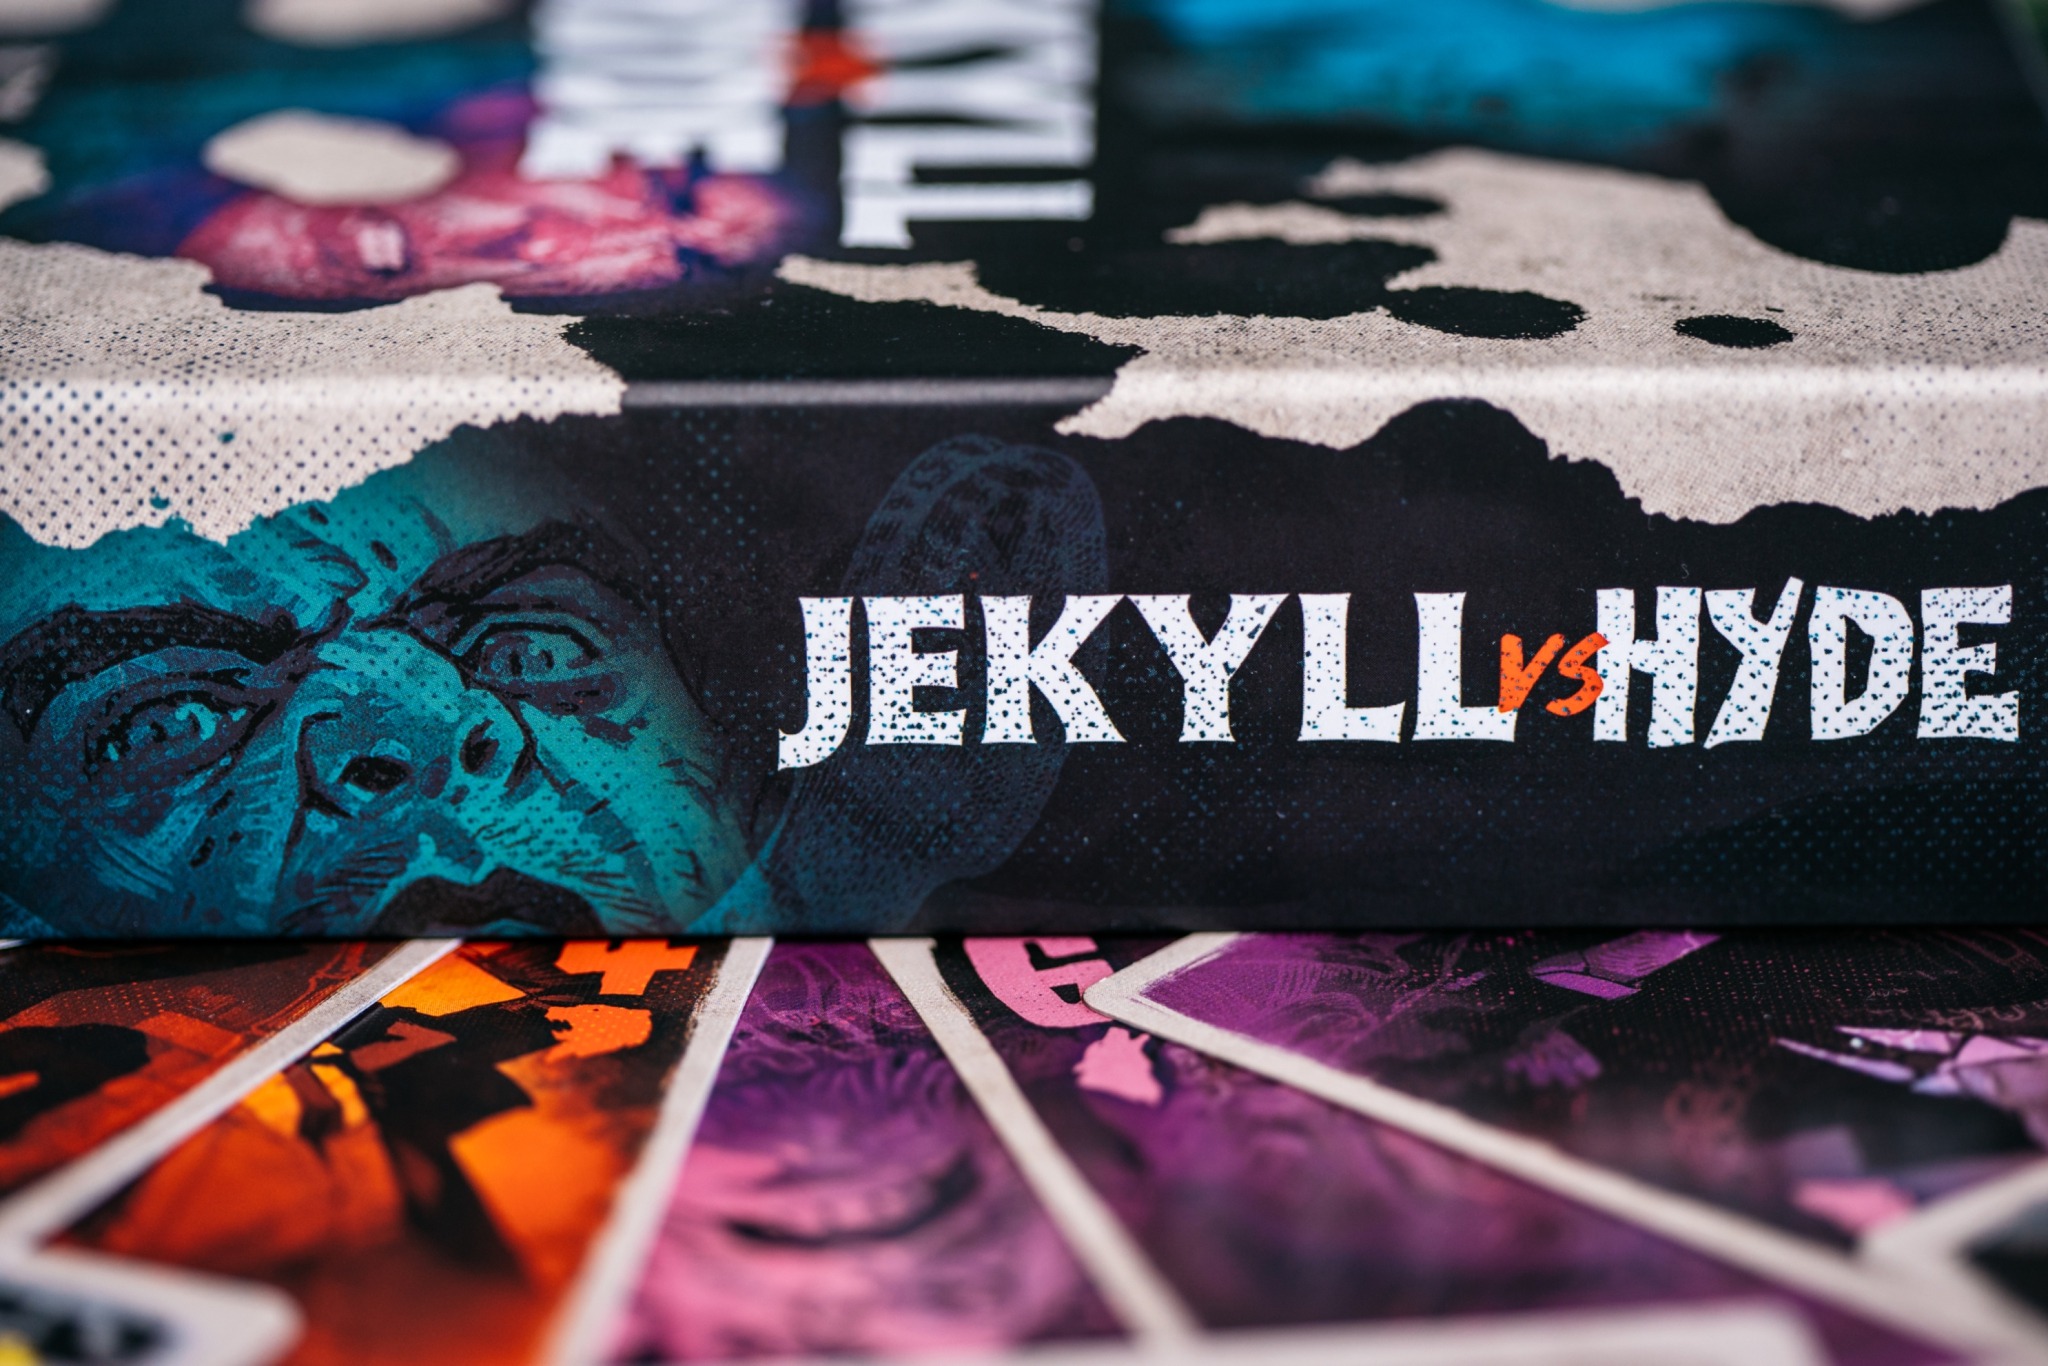 Jekyll vs Hyde mandoo games